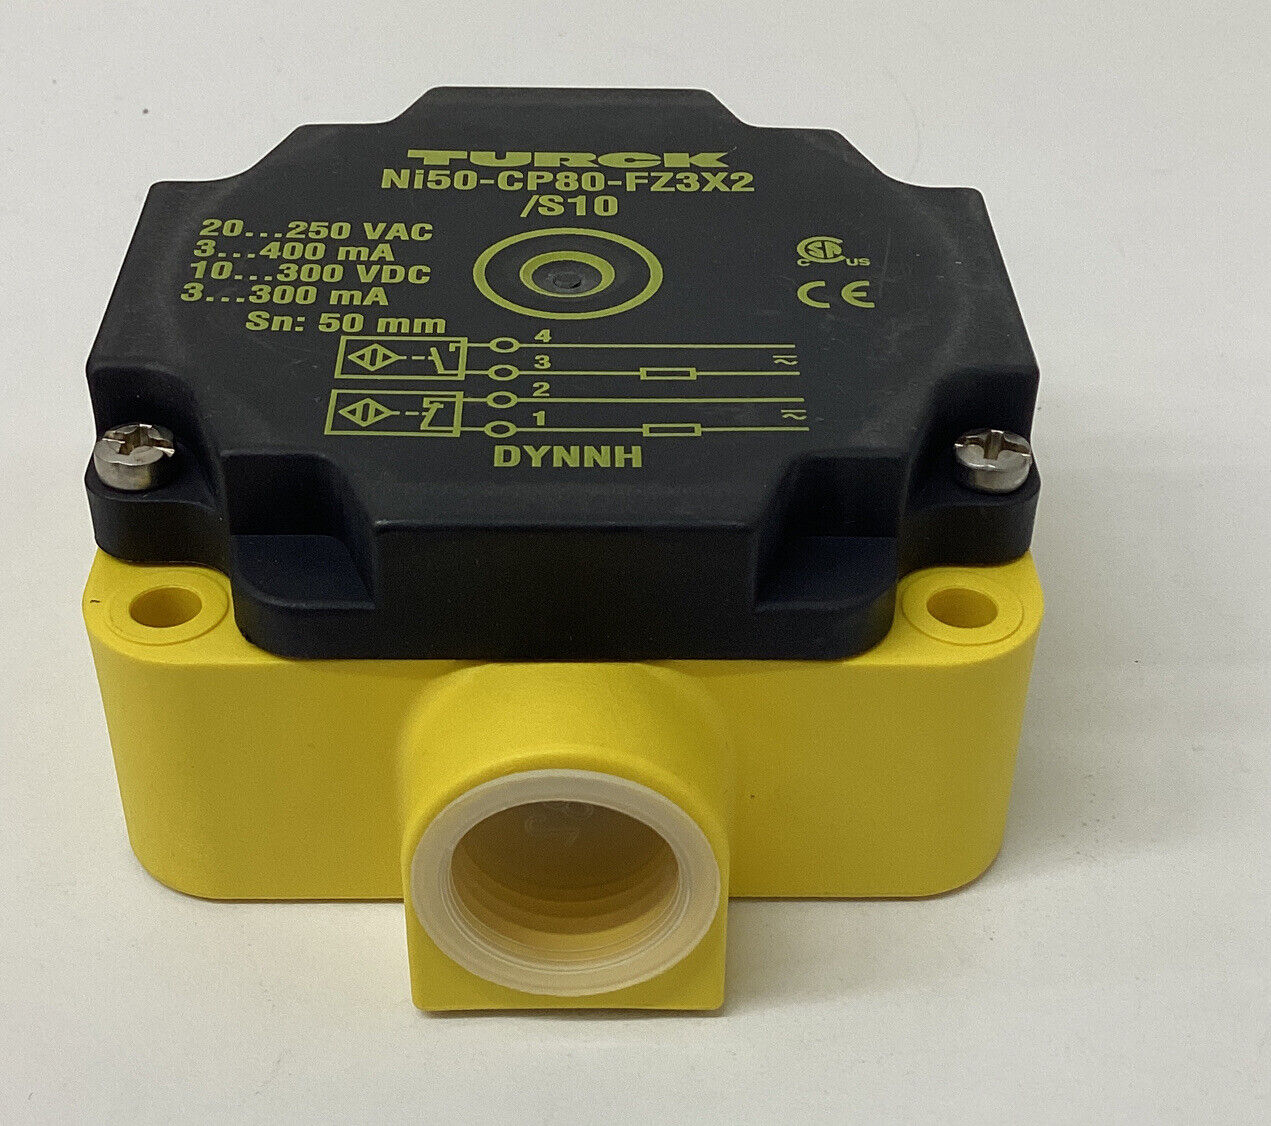 Turck Ni50-CP80-FZ3X2/S10 / 13416 Proximity Sensor (YE245)